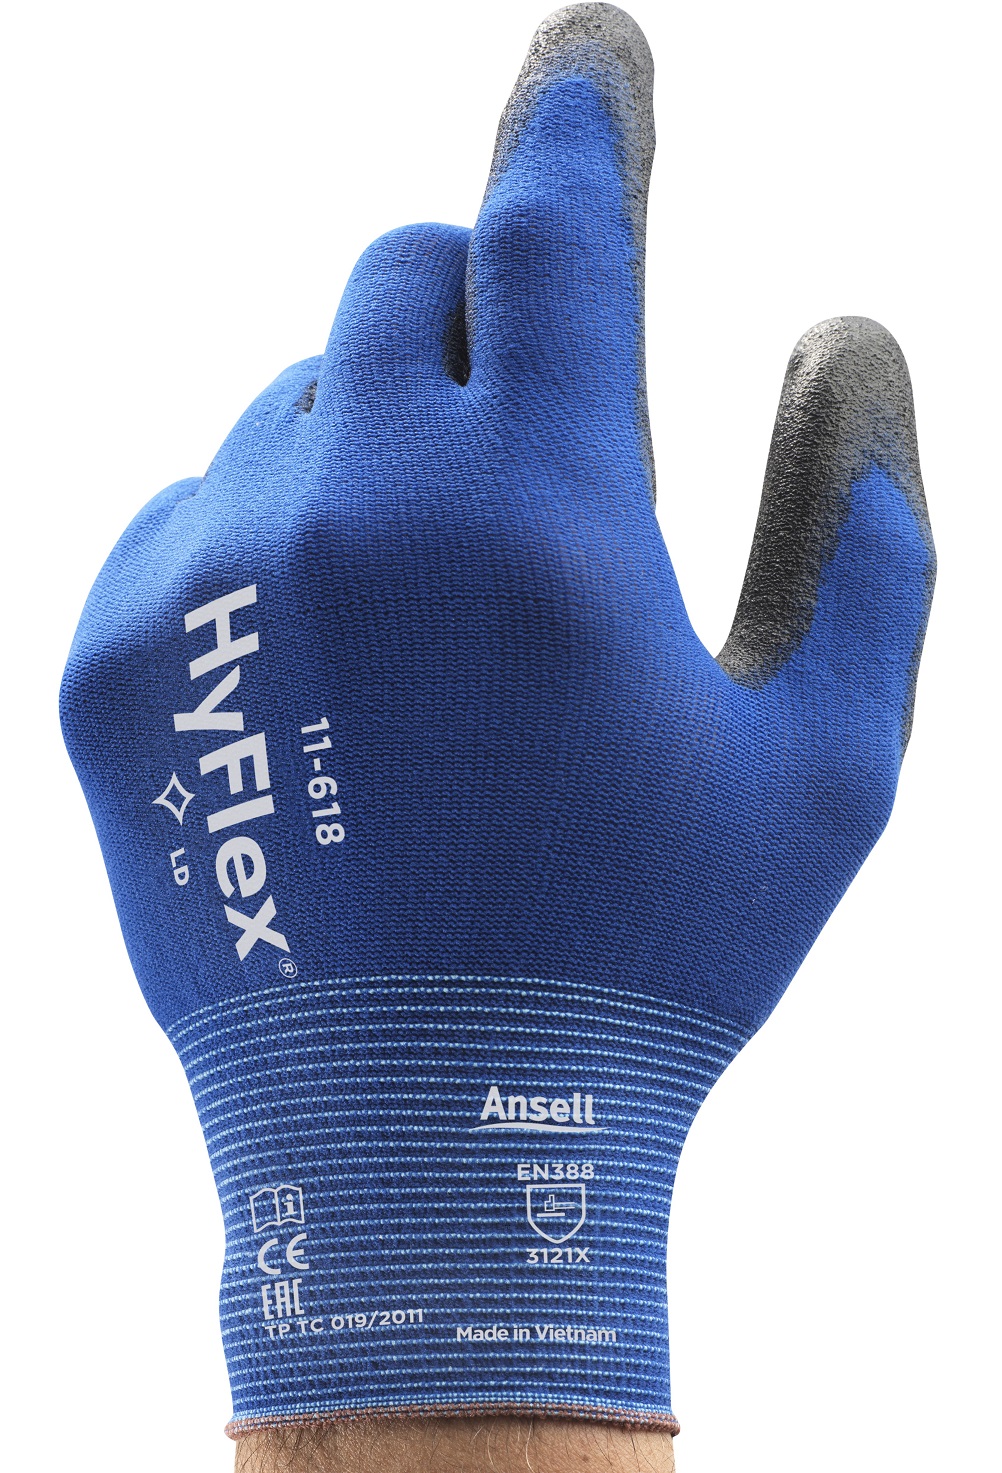 10 ANSELL Montage-Handschuh HyFlex 11-618,blau/schwarz Gr 